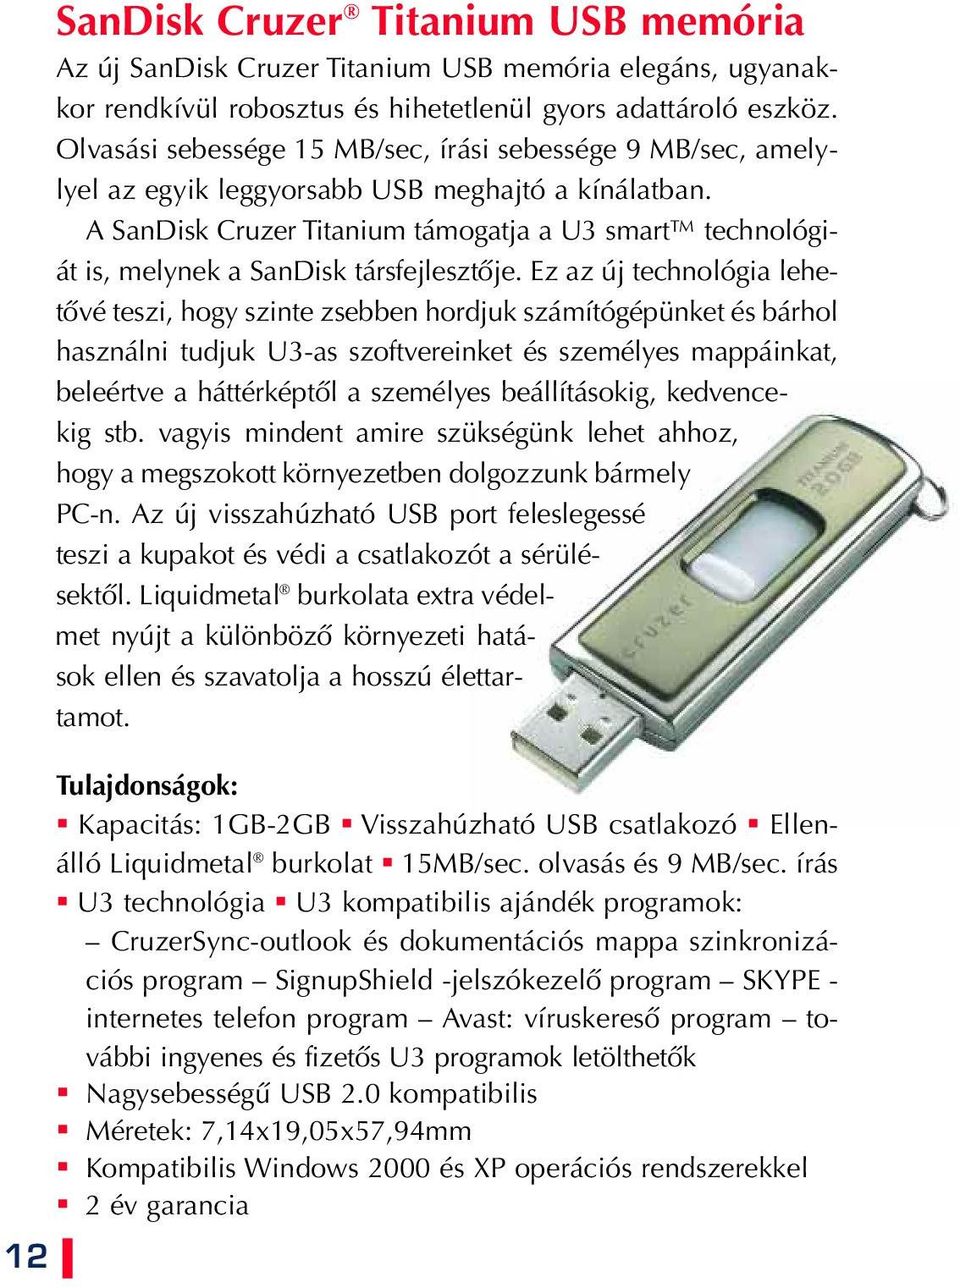 A SanDisk Cruzer Titanium támogatja a U3 smart technológiát is, melynek a SanDisk társfejlesztôje.